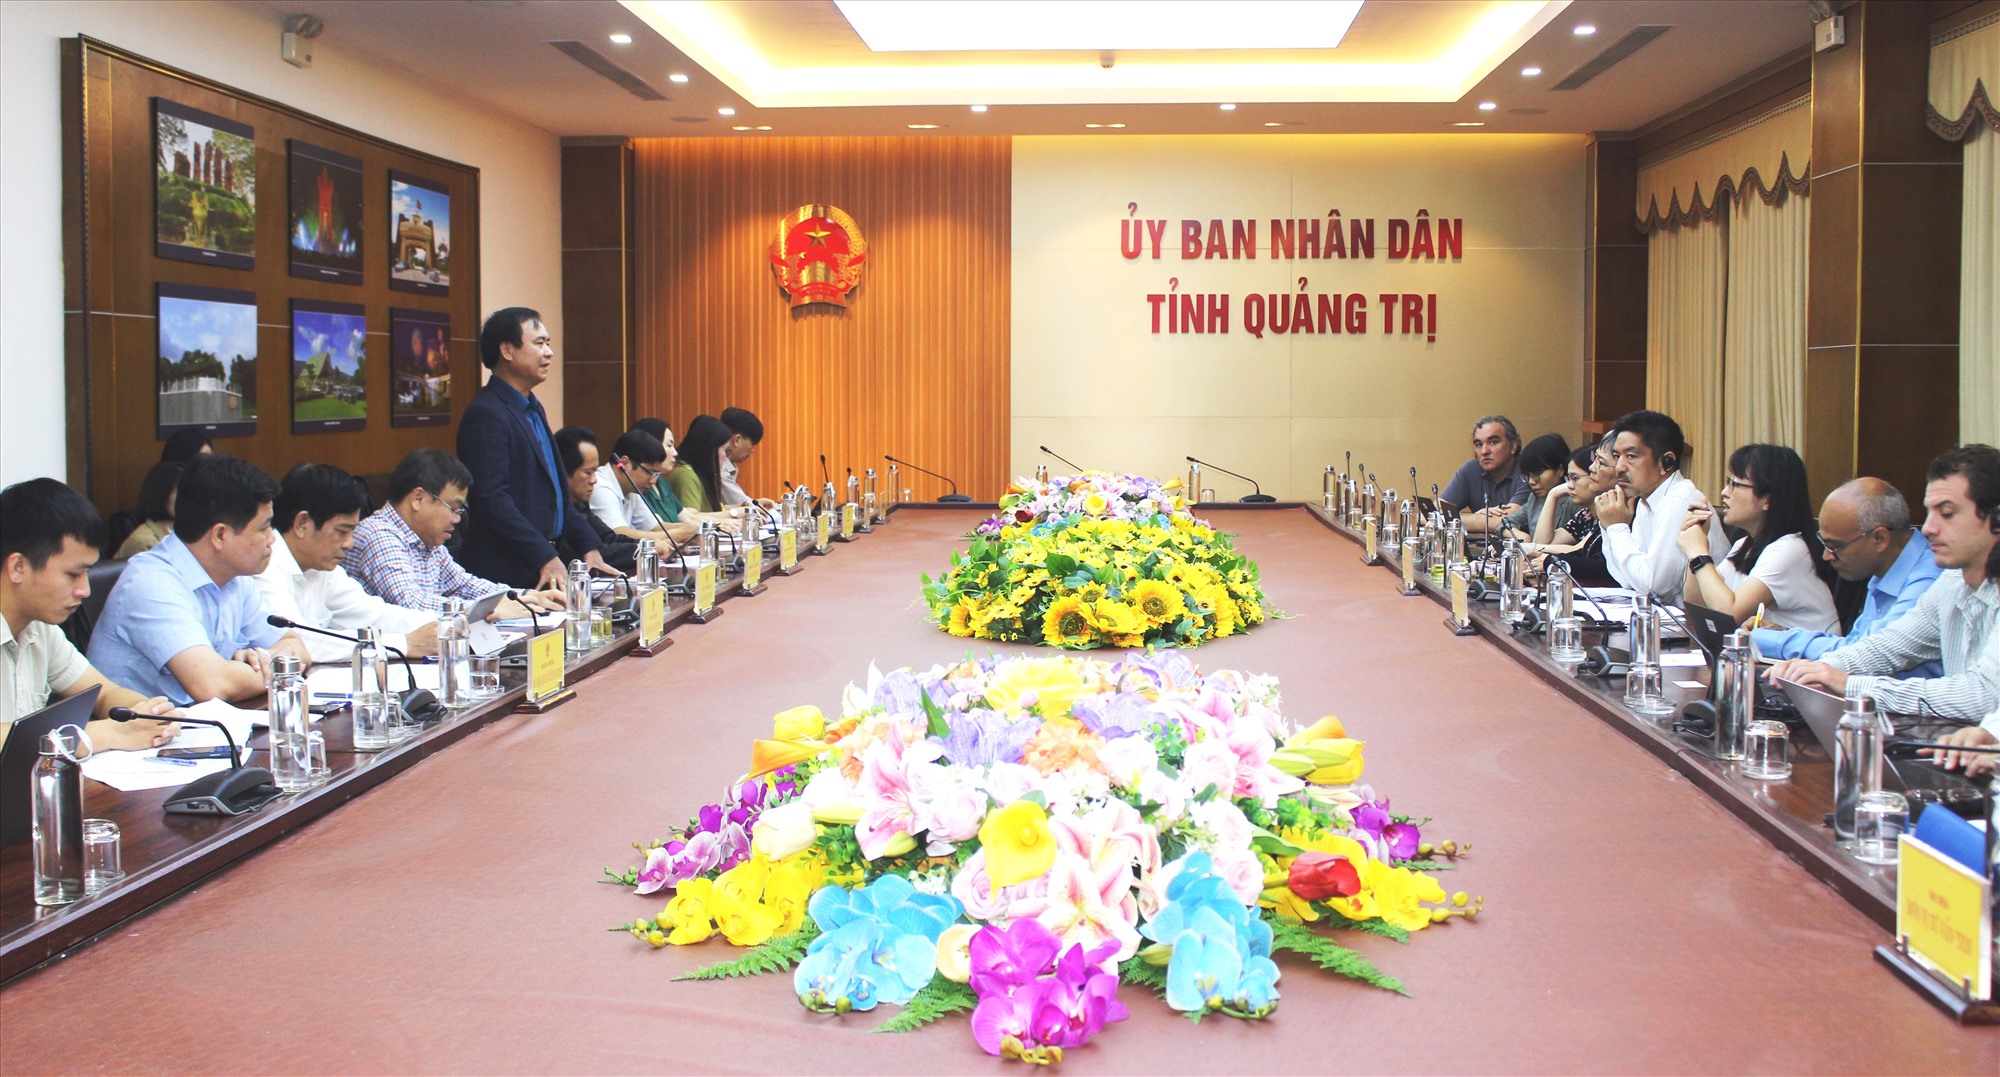 Chủ tịch UBND tỉnh Võ Văn Hưng mong muốn WB quan tâm, hỗ trợ nguồn vốn để đầu tư xây dựng Dự án đường bộ cao tốc Cam Lộ - Lao Bảo - Ảnh: T.T